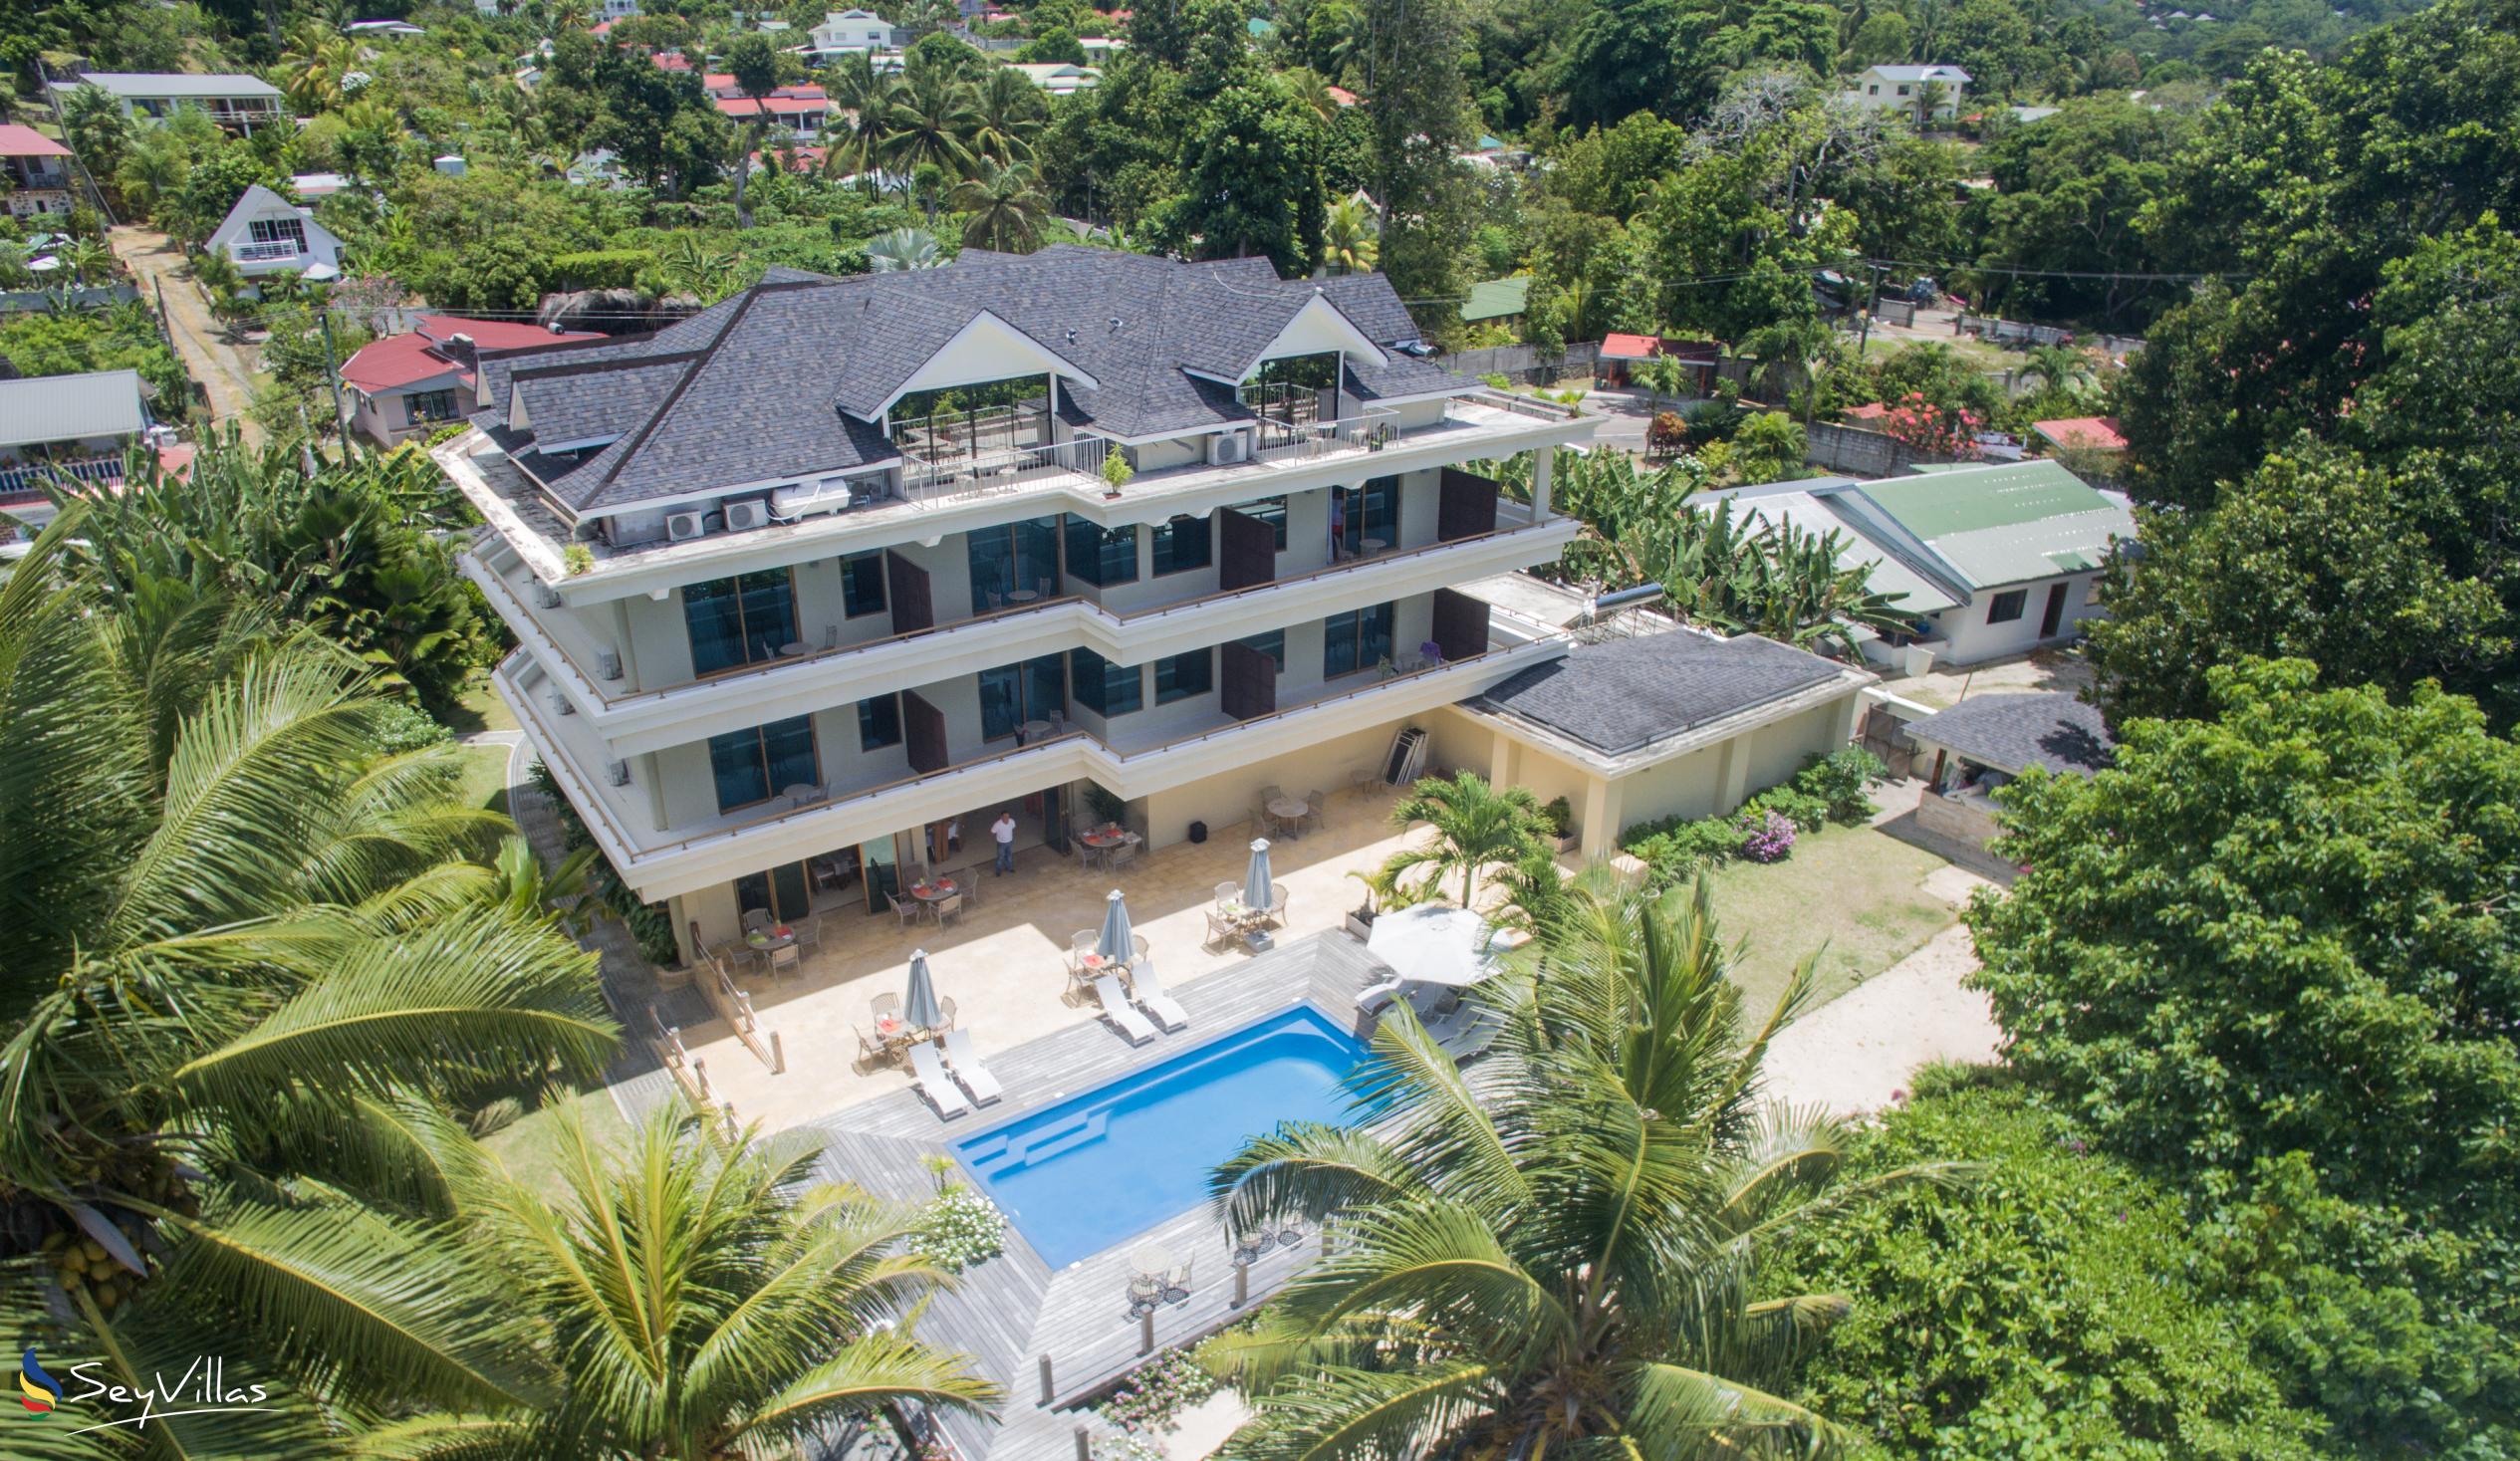 Photo 8: Crown Beach Hotel - Outdoor area - Mahé (Seychelles)